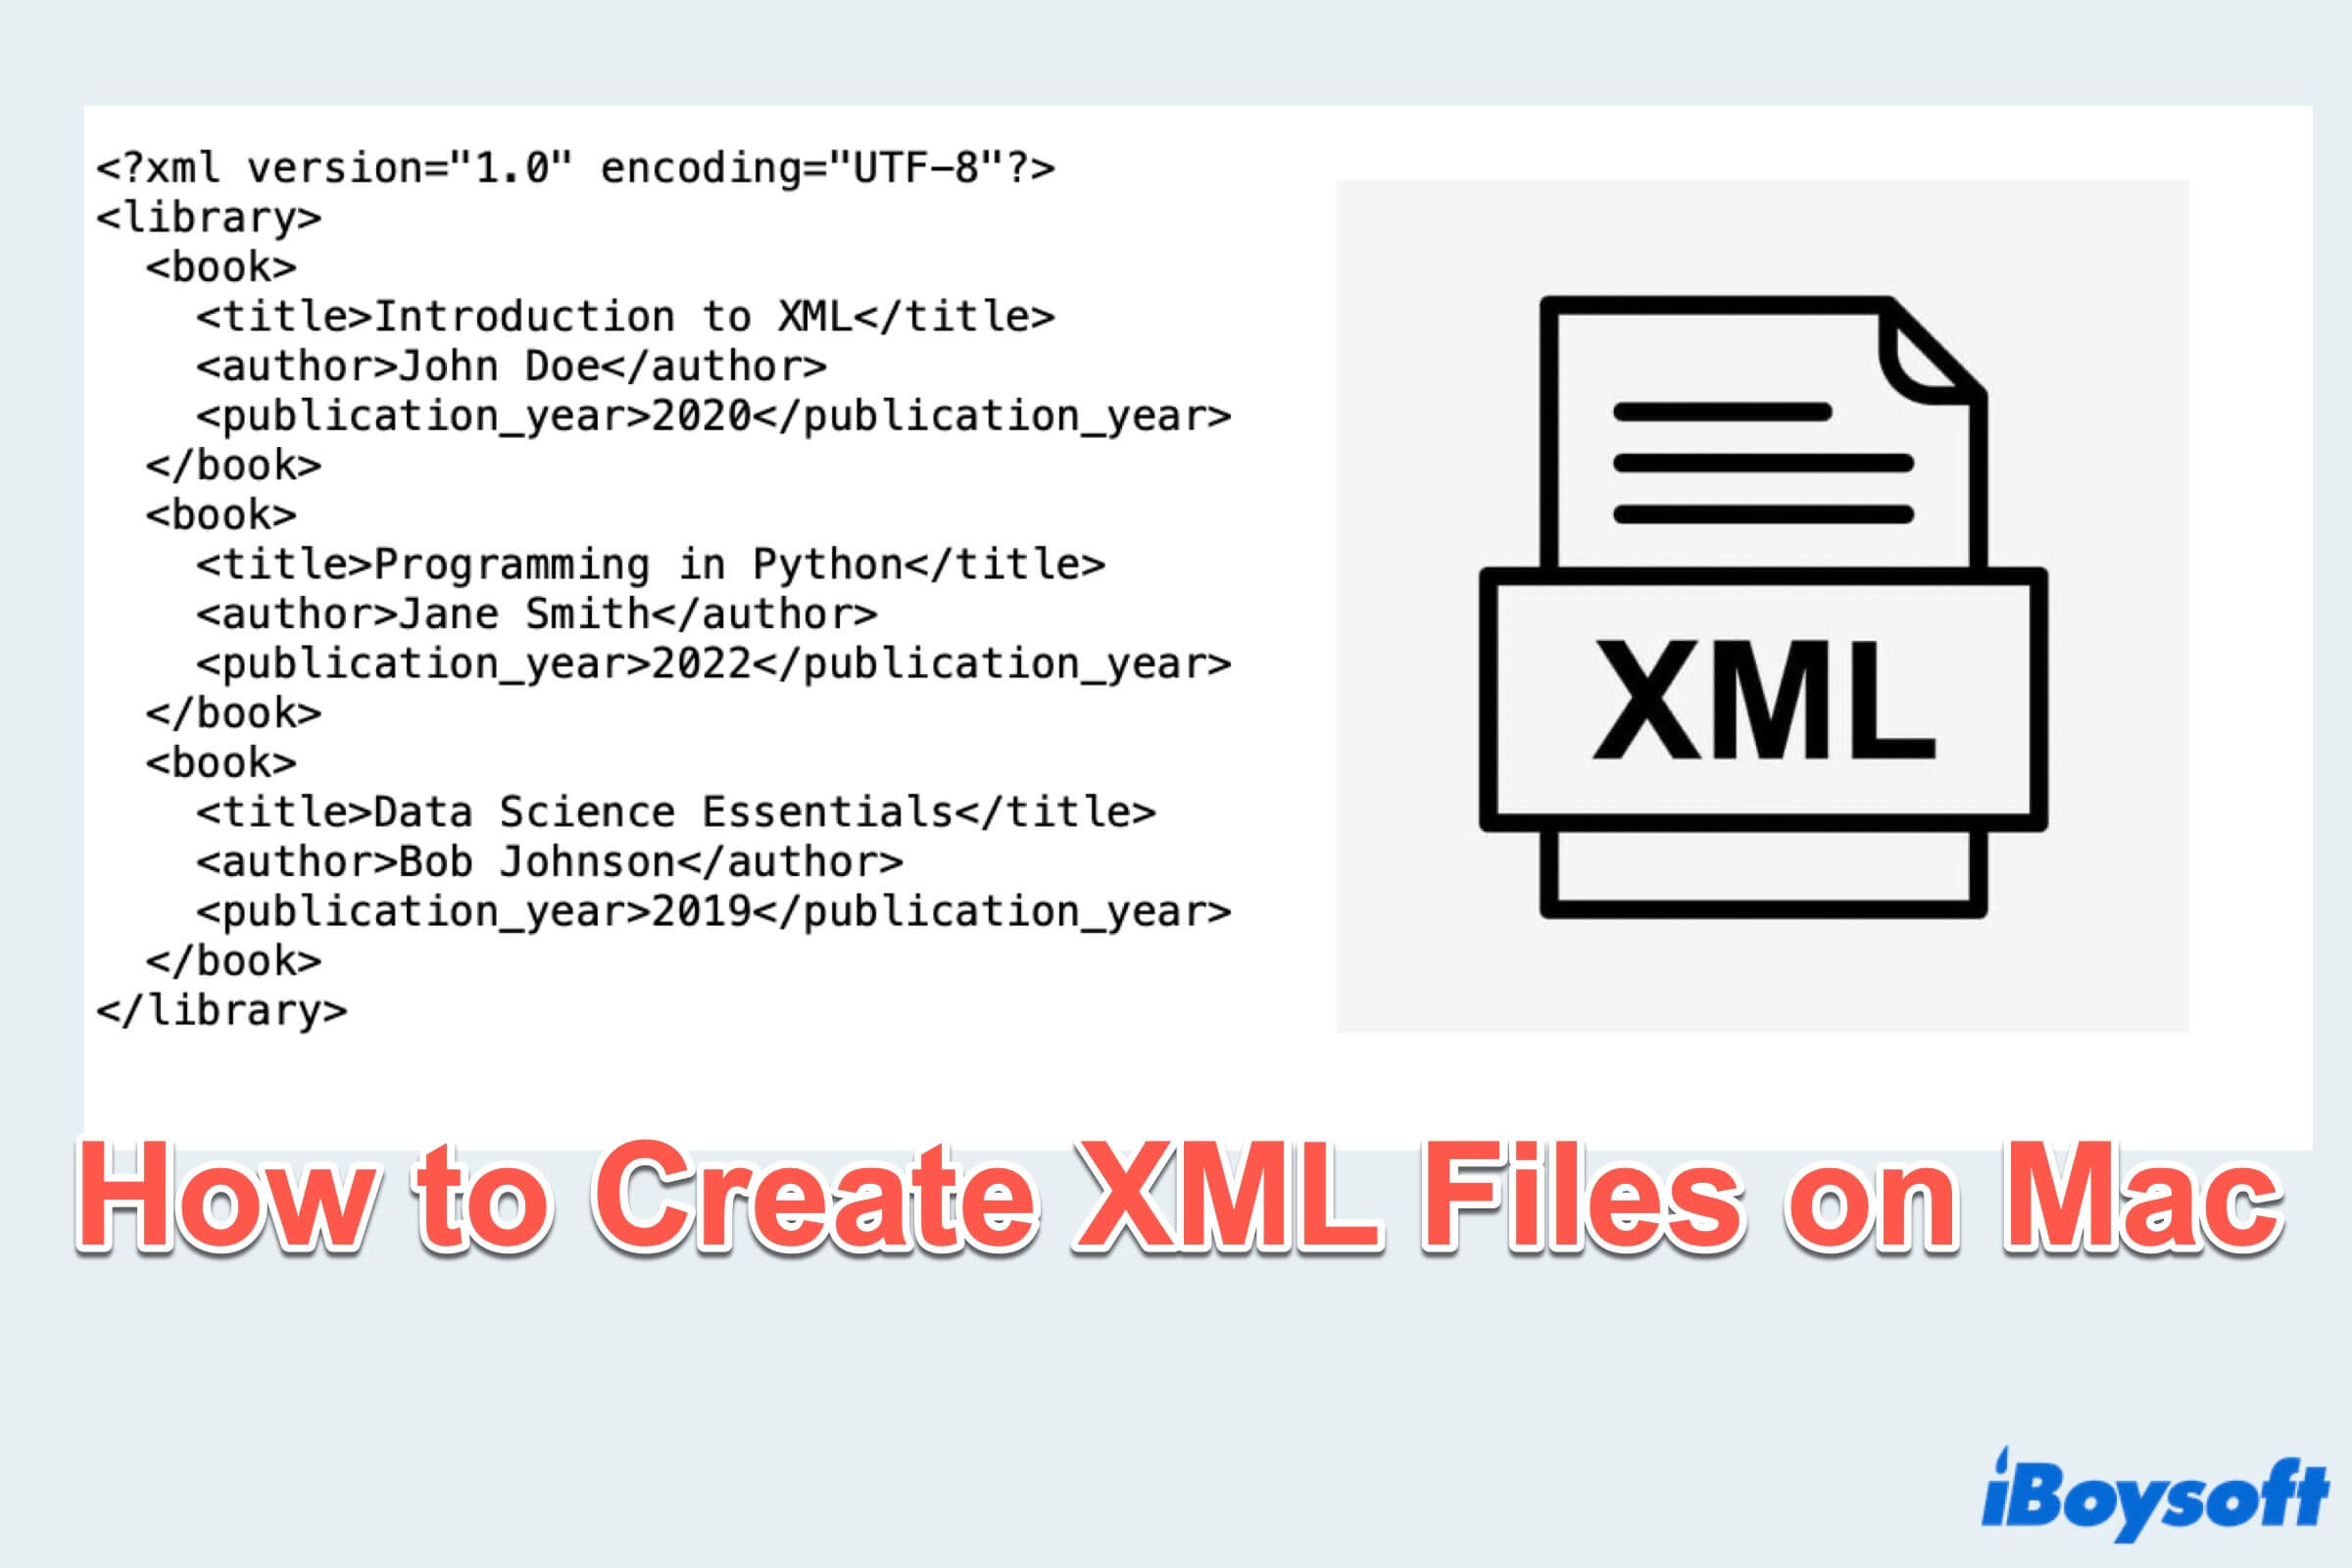 Résumé de la création d'un fichier XML sur Mac